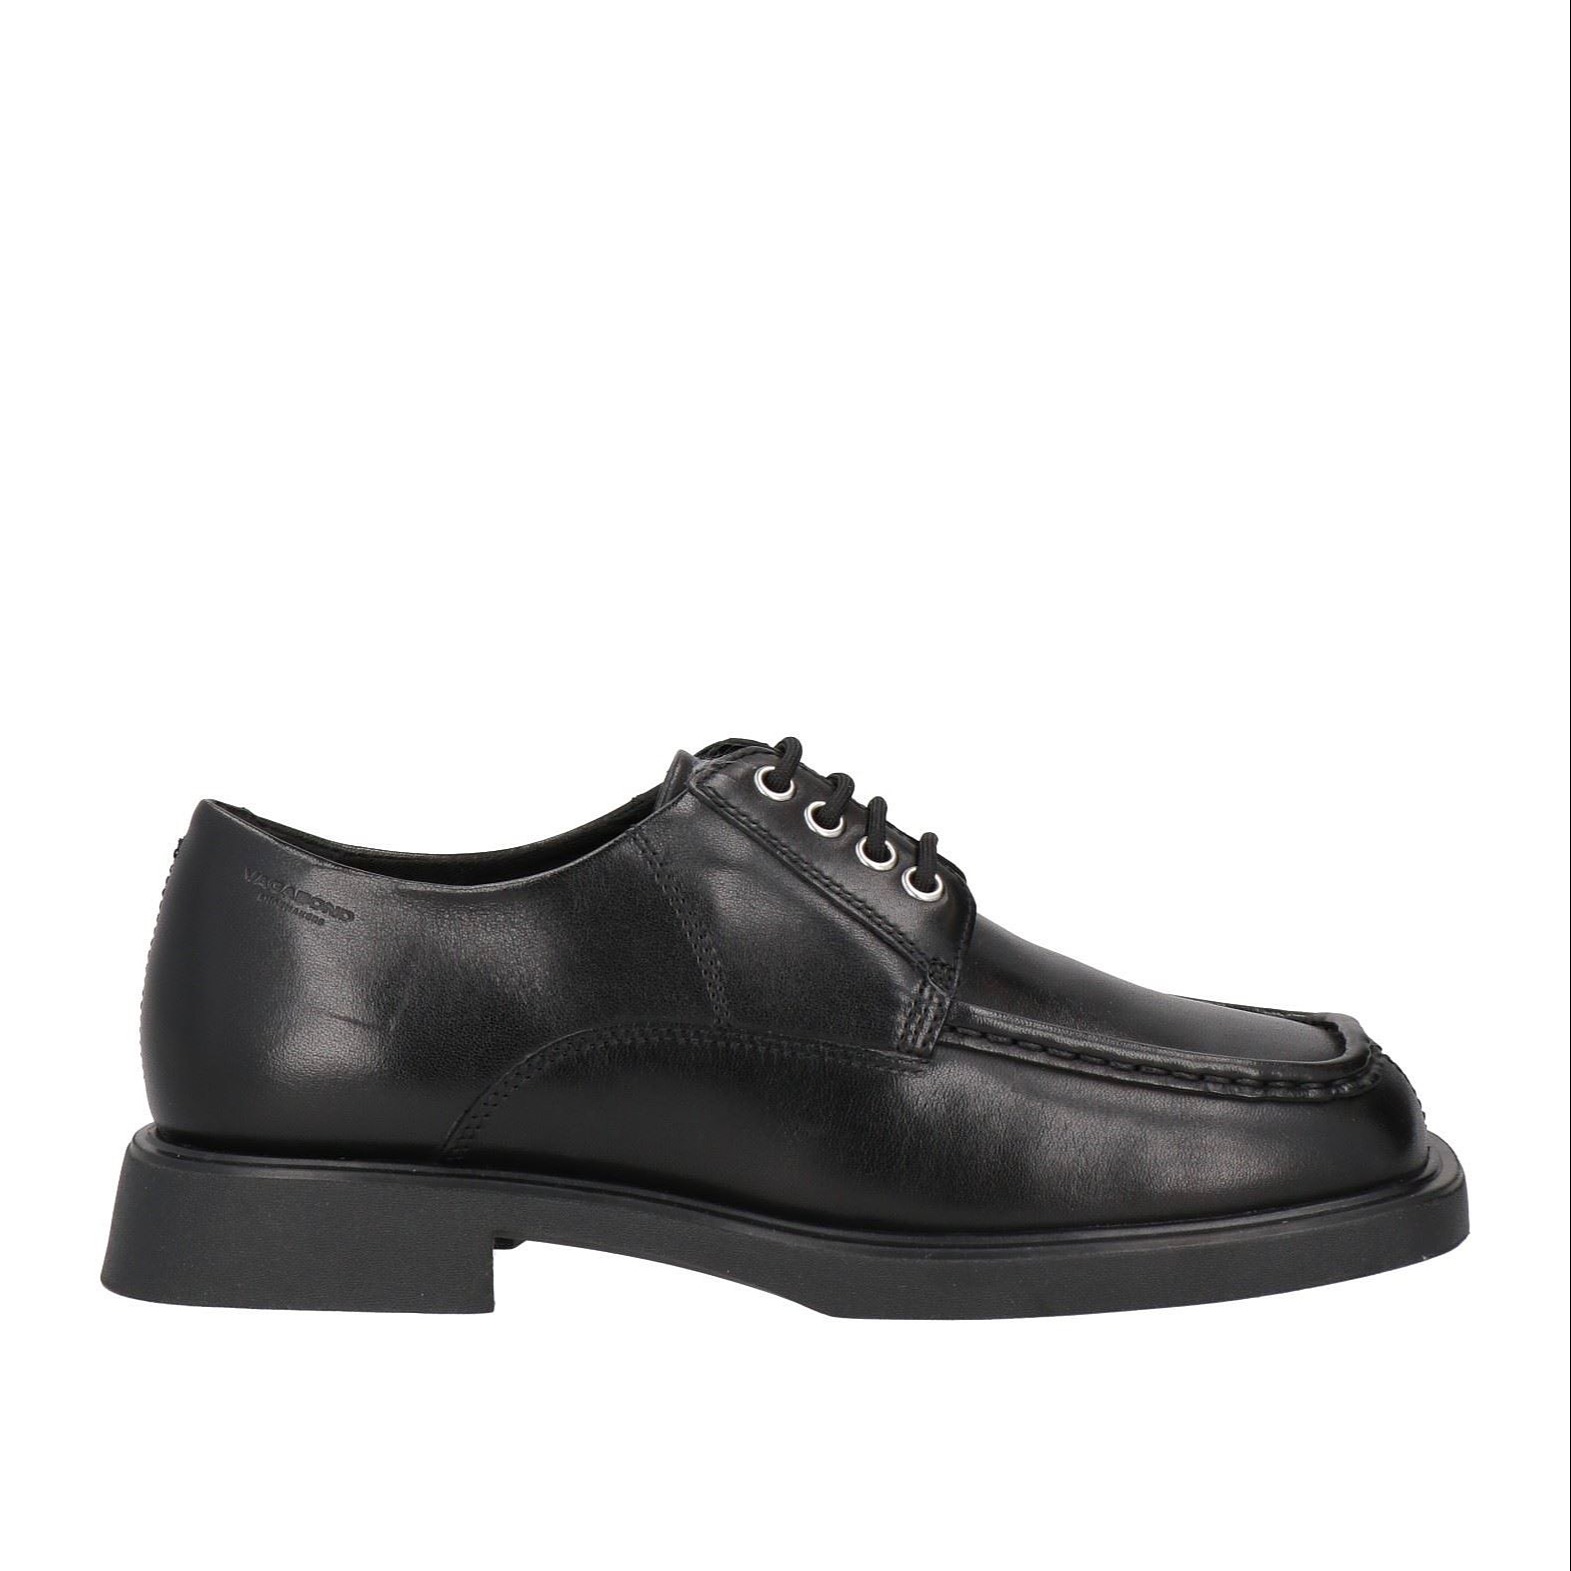 Туфли Vagabond Shoemakers Laced, черный ботинки женские из натуральной кожи на толстой рельефной подошве с невысоким квадратным каблуком 2287 цвет коричневый размер 40